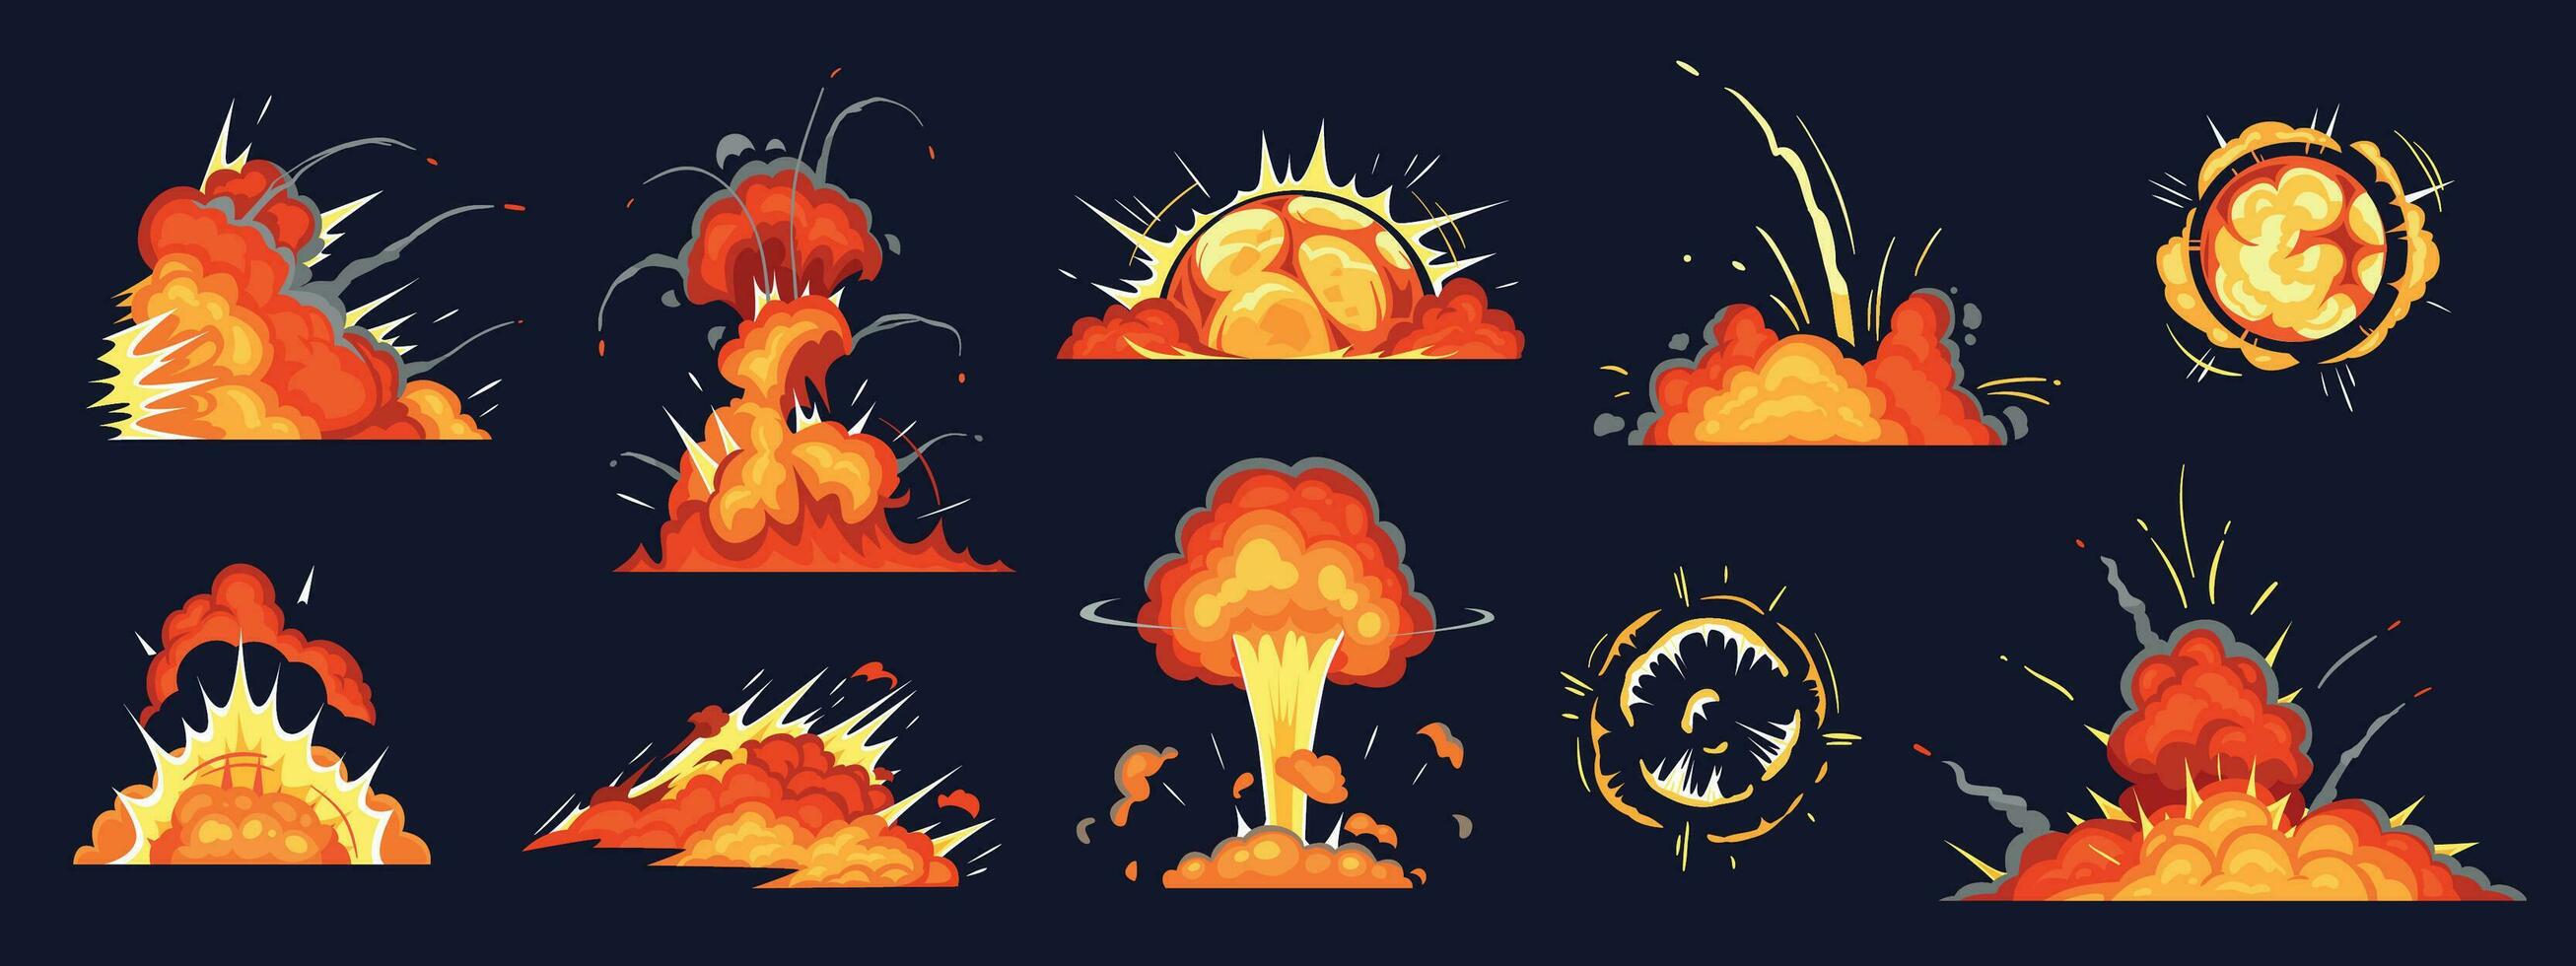 desenho animado bombear explosão. dinamite explosões, Perigo explosivo bombear detonação e atômico bombas nuvem histórias em quadrinhos vetor ilustração conjunto